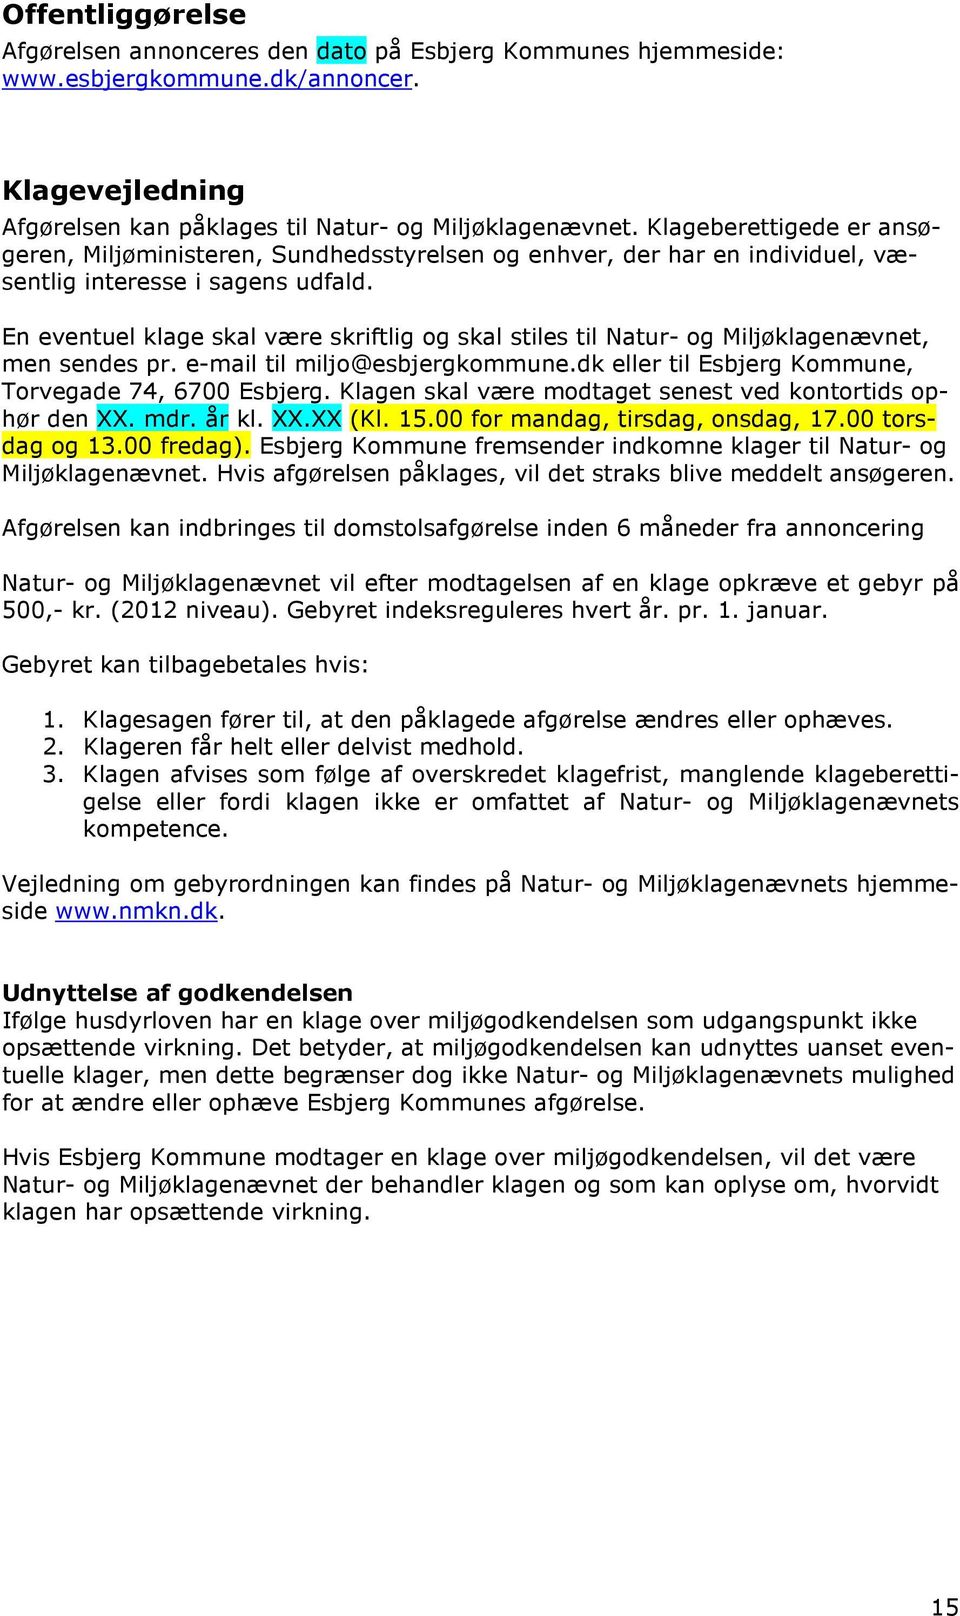 En eventuel klage skal være skriftlig og skal stiles til Natur- og Miljøklagenævnet, men sendes pr. e-mail til miljo@esbjergkommune.dk eller til Esbjerg Kommune, Torvegade 74, 6700 Esbjerg.